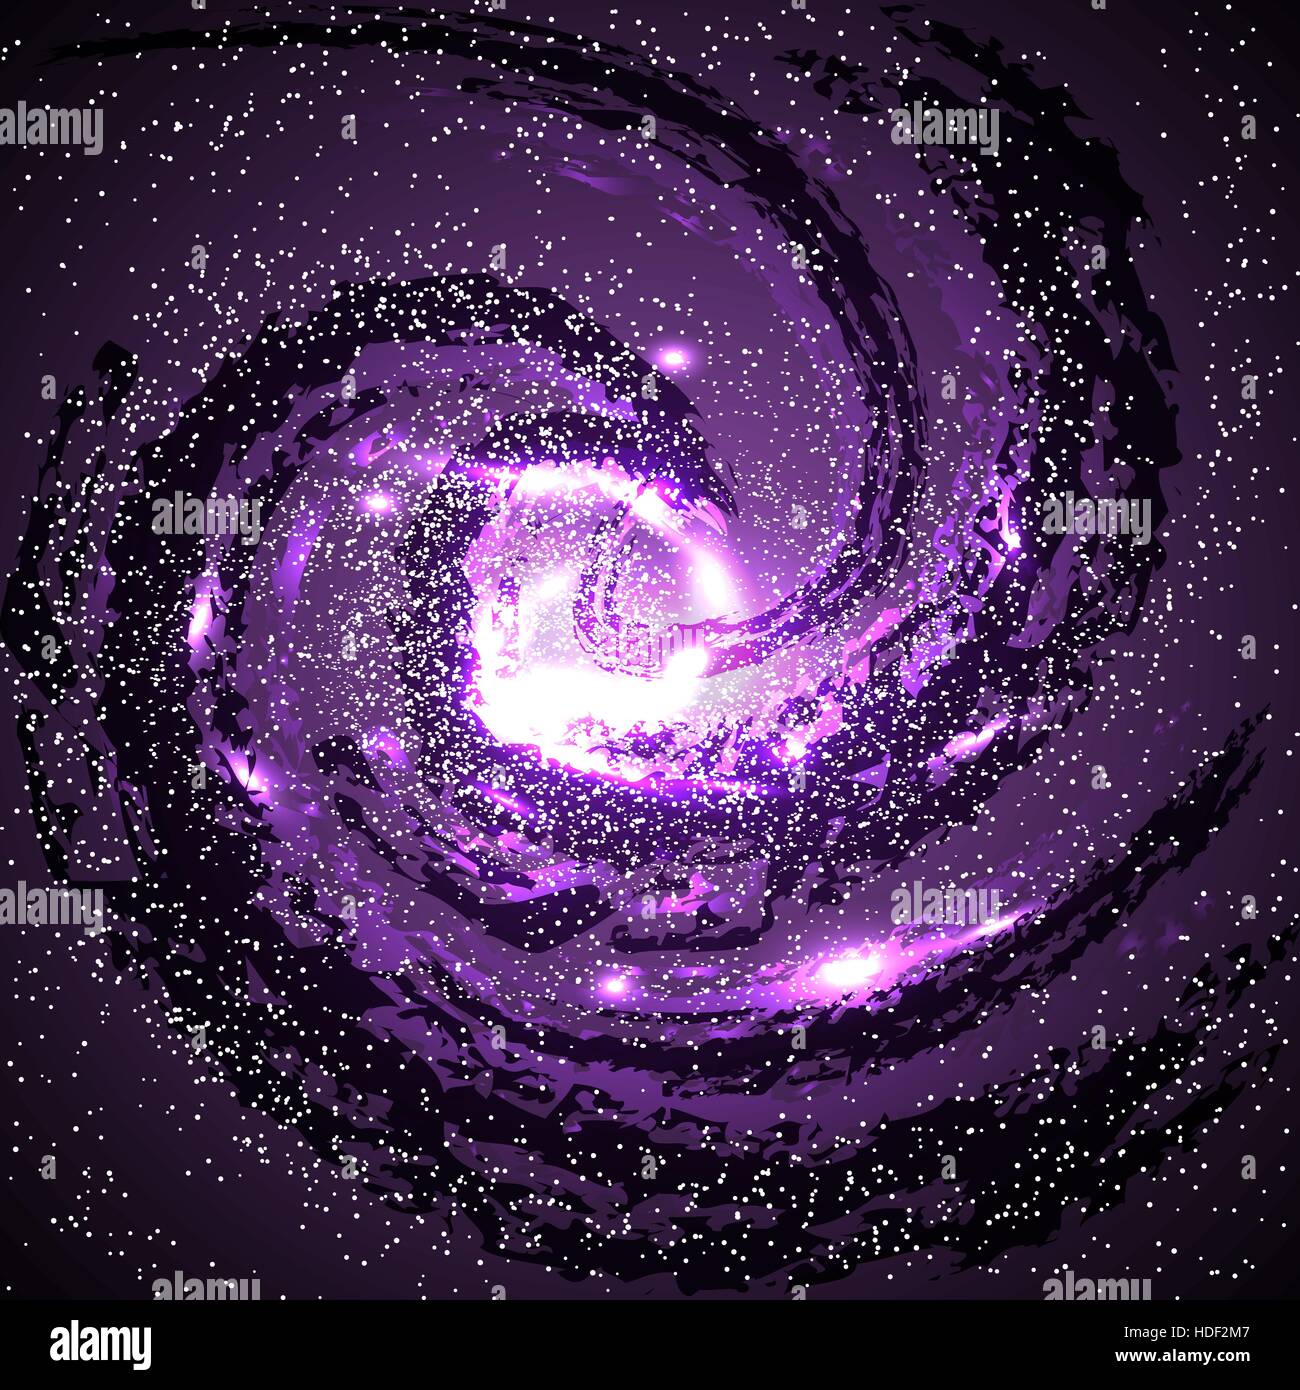 Bild von Galaxien, Nebel, Kosmos und Effekt-Tunnel-Spiralgalaxie-Hintergrund-Vektor-illustration Stock Vektor